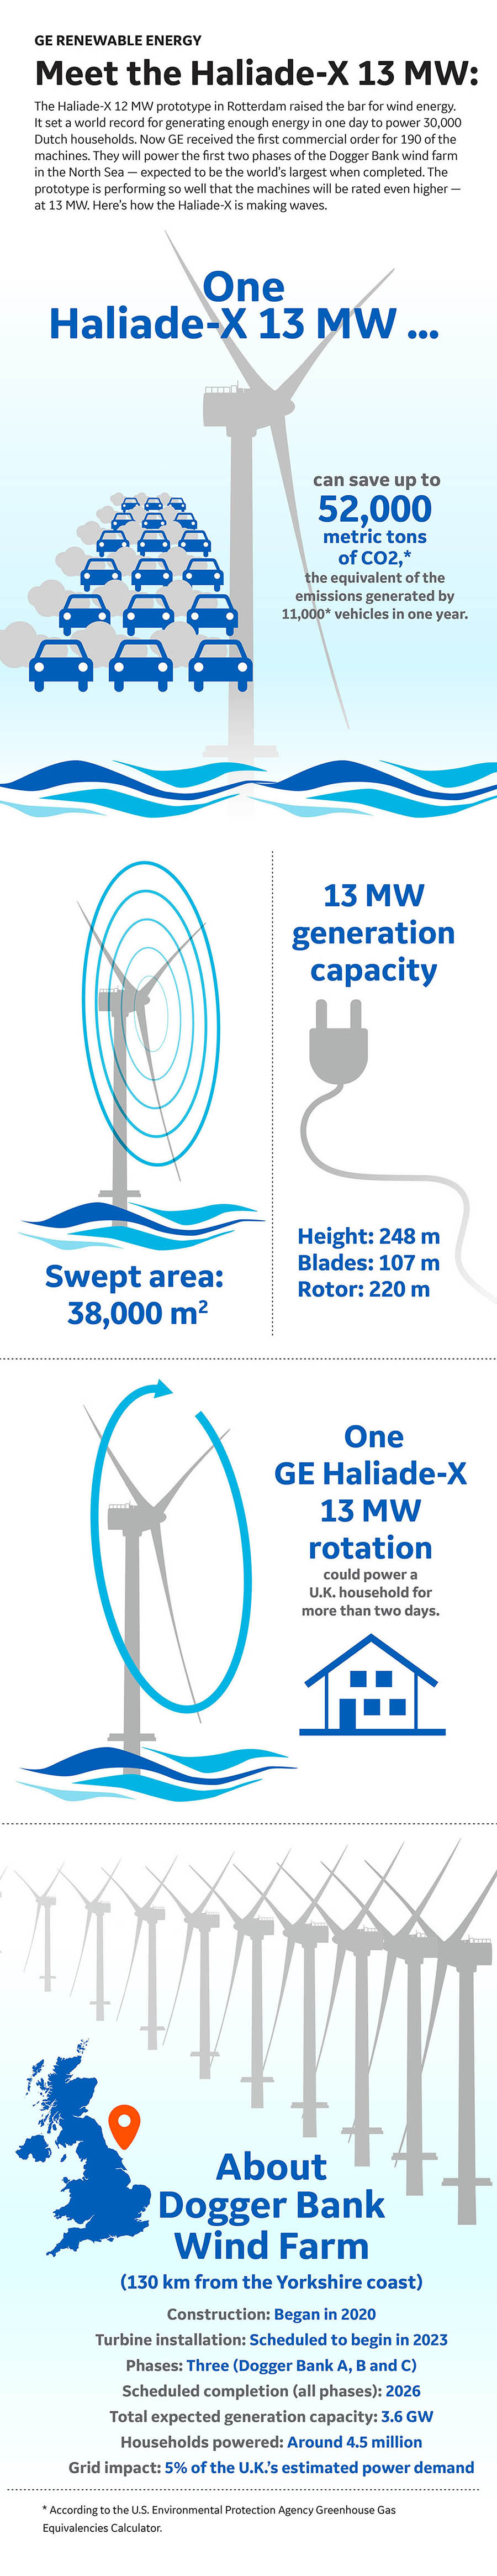 GE Haliade X 13 MW GE Renewable Energy